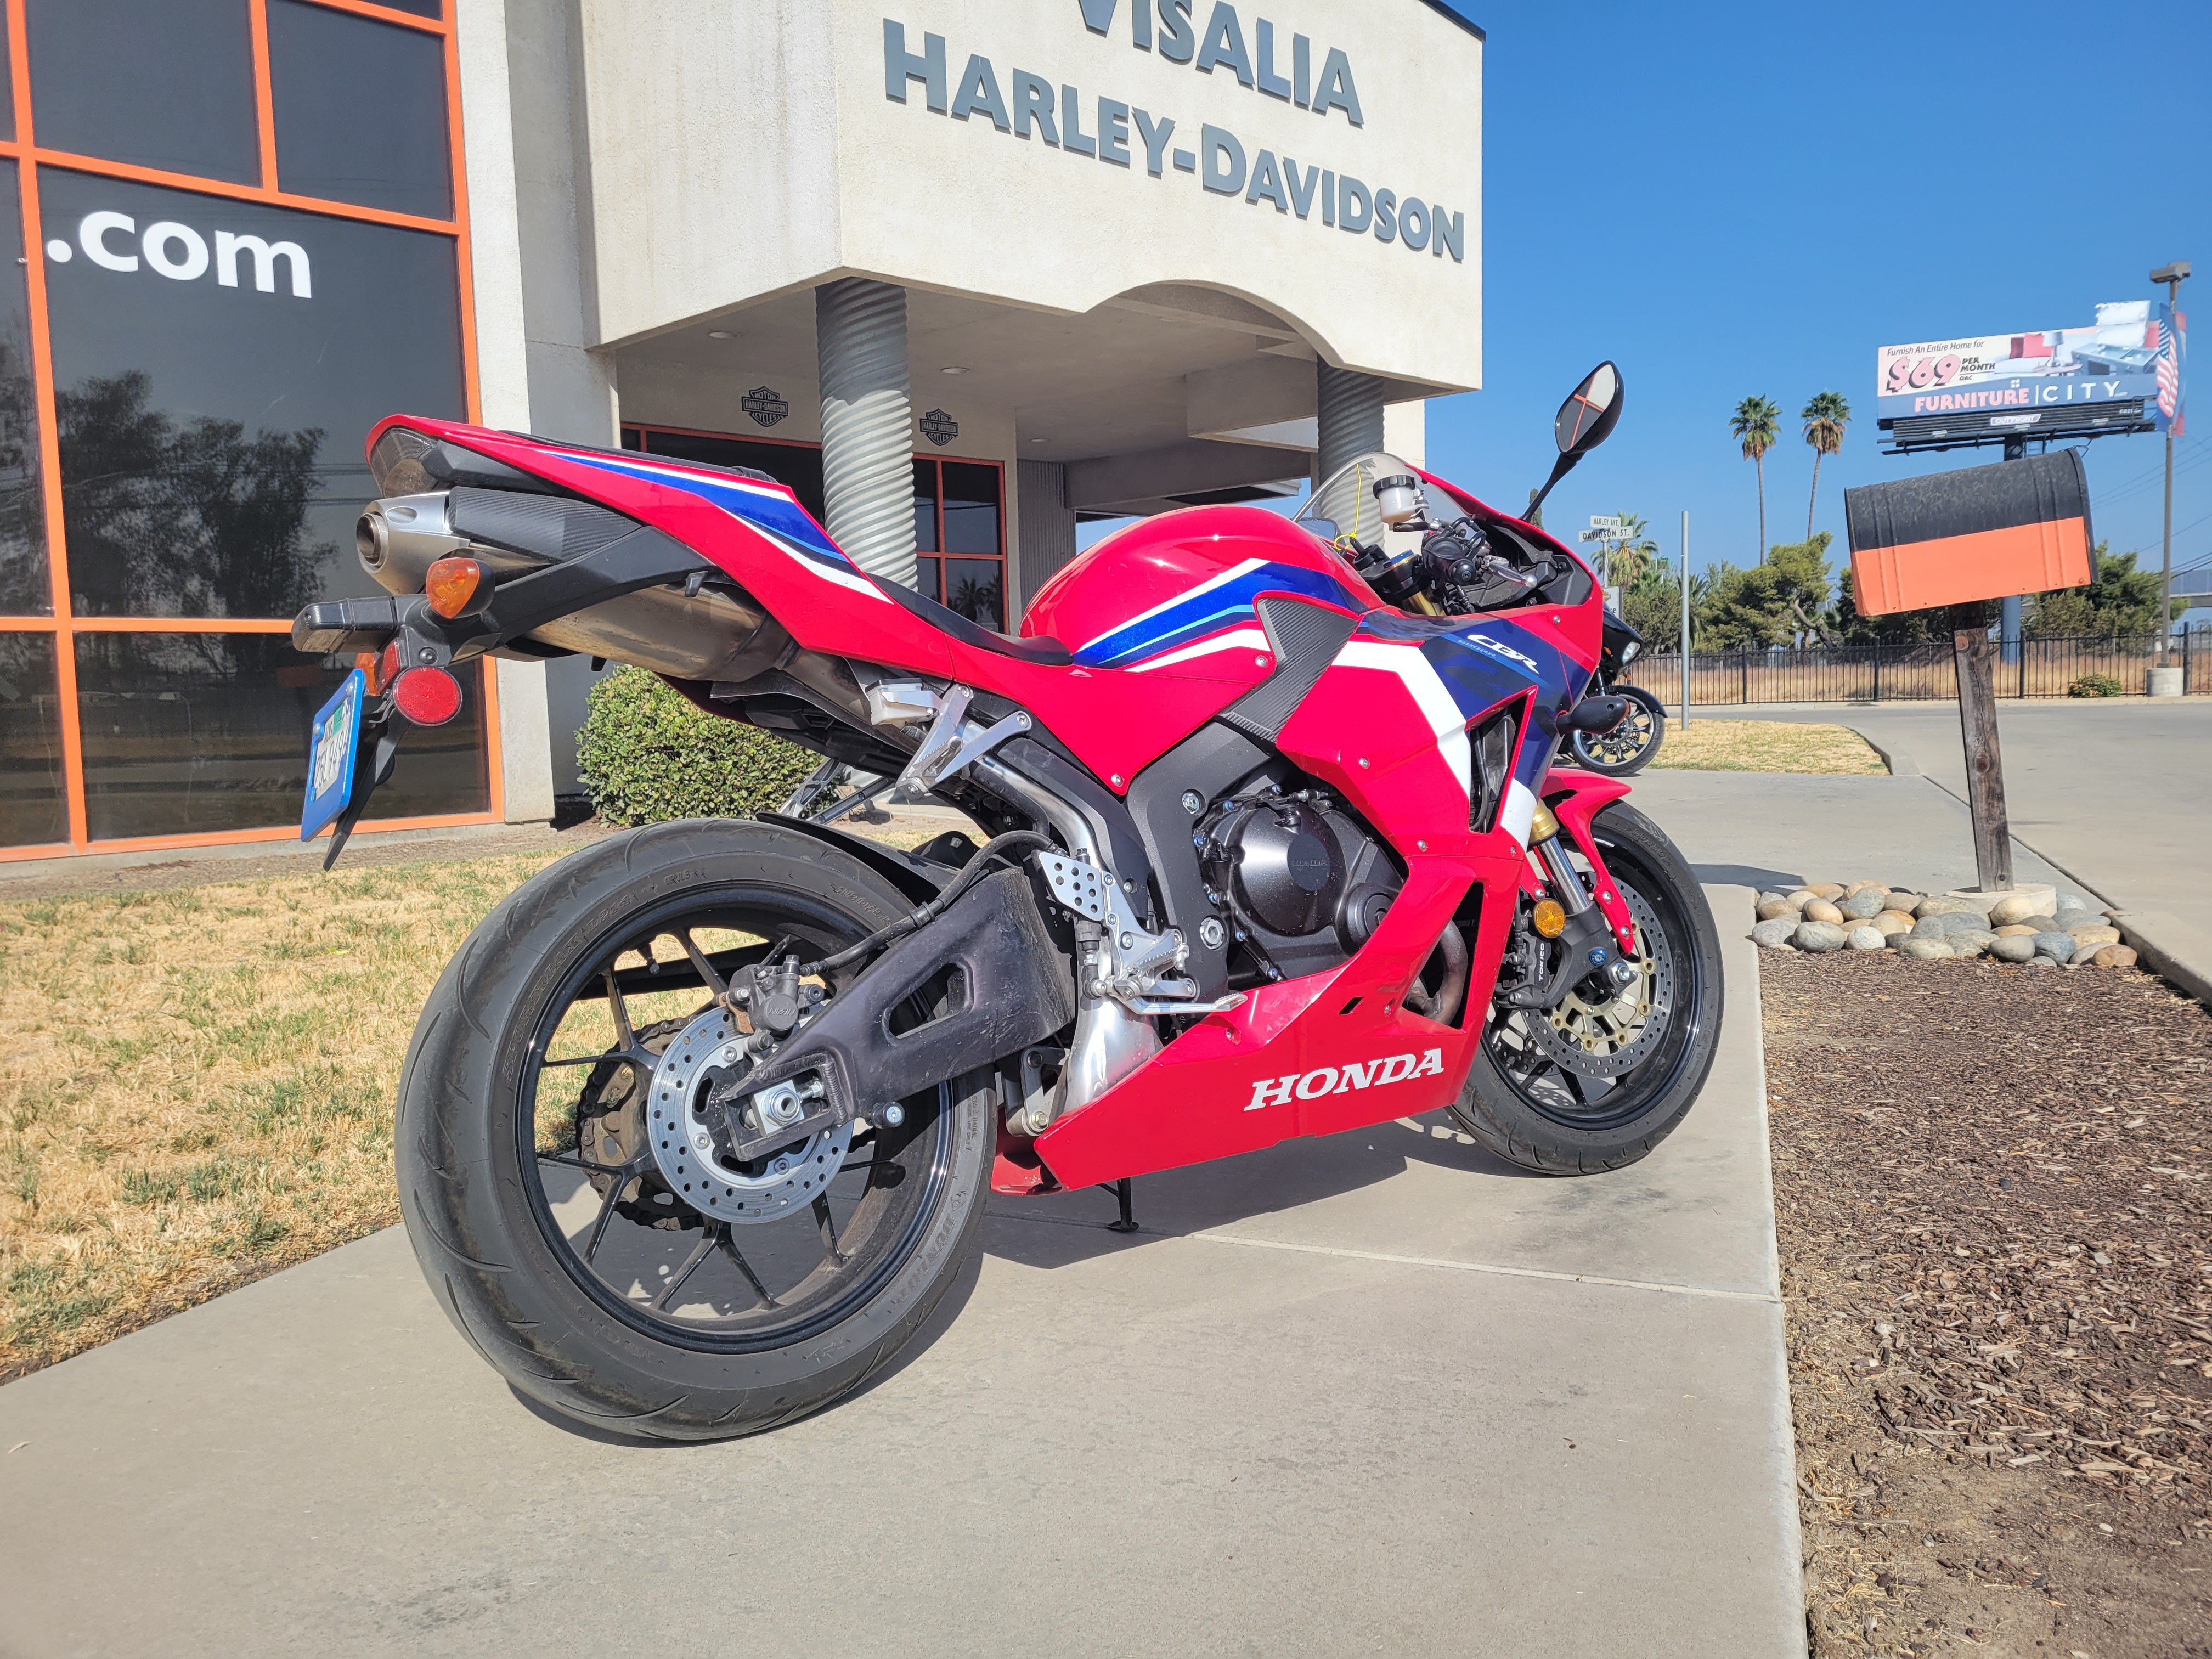 2021 Honda CBR600RR Base at Visalia Harley-Davidson